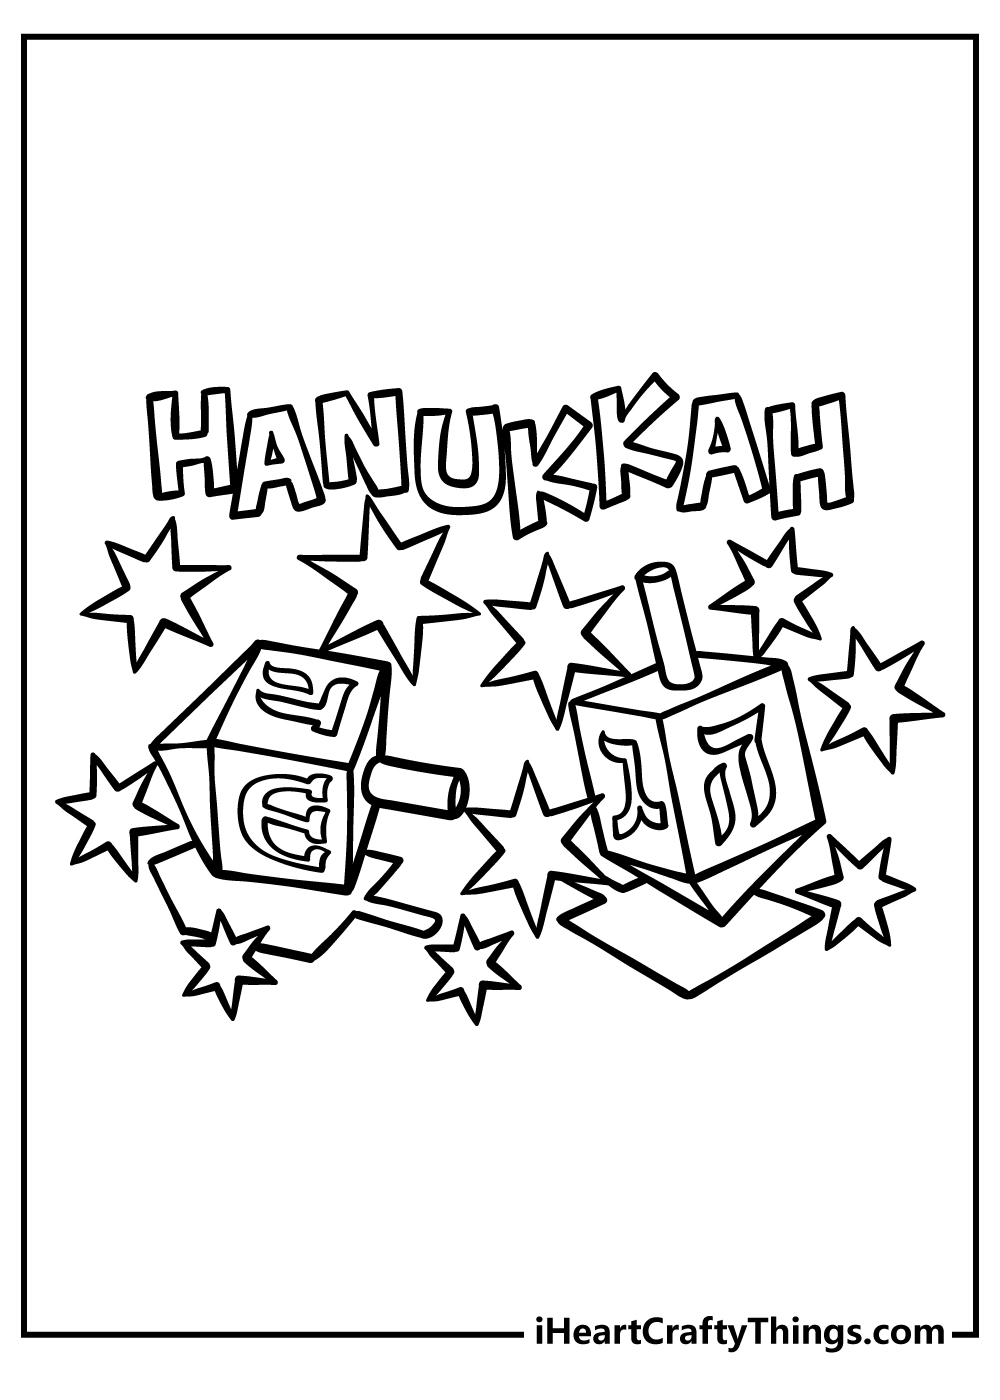 Hanukkah Coloring Book for kids free printable